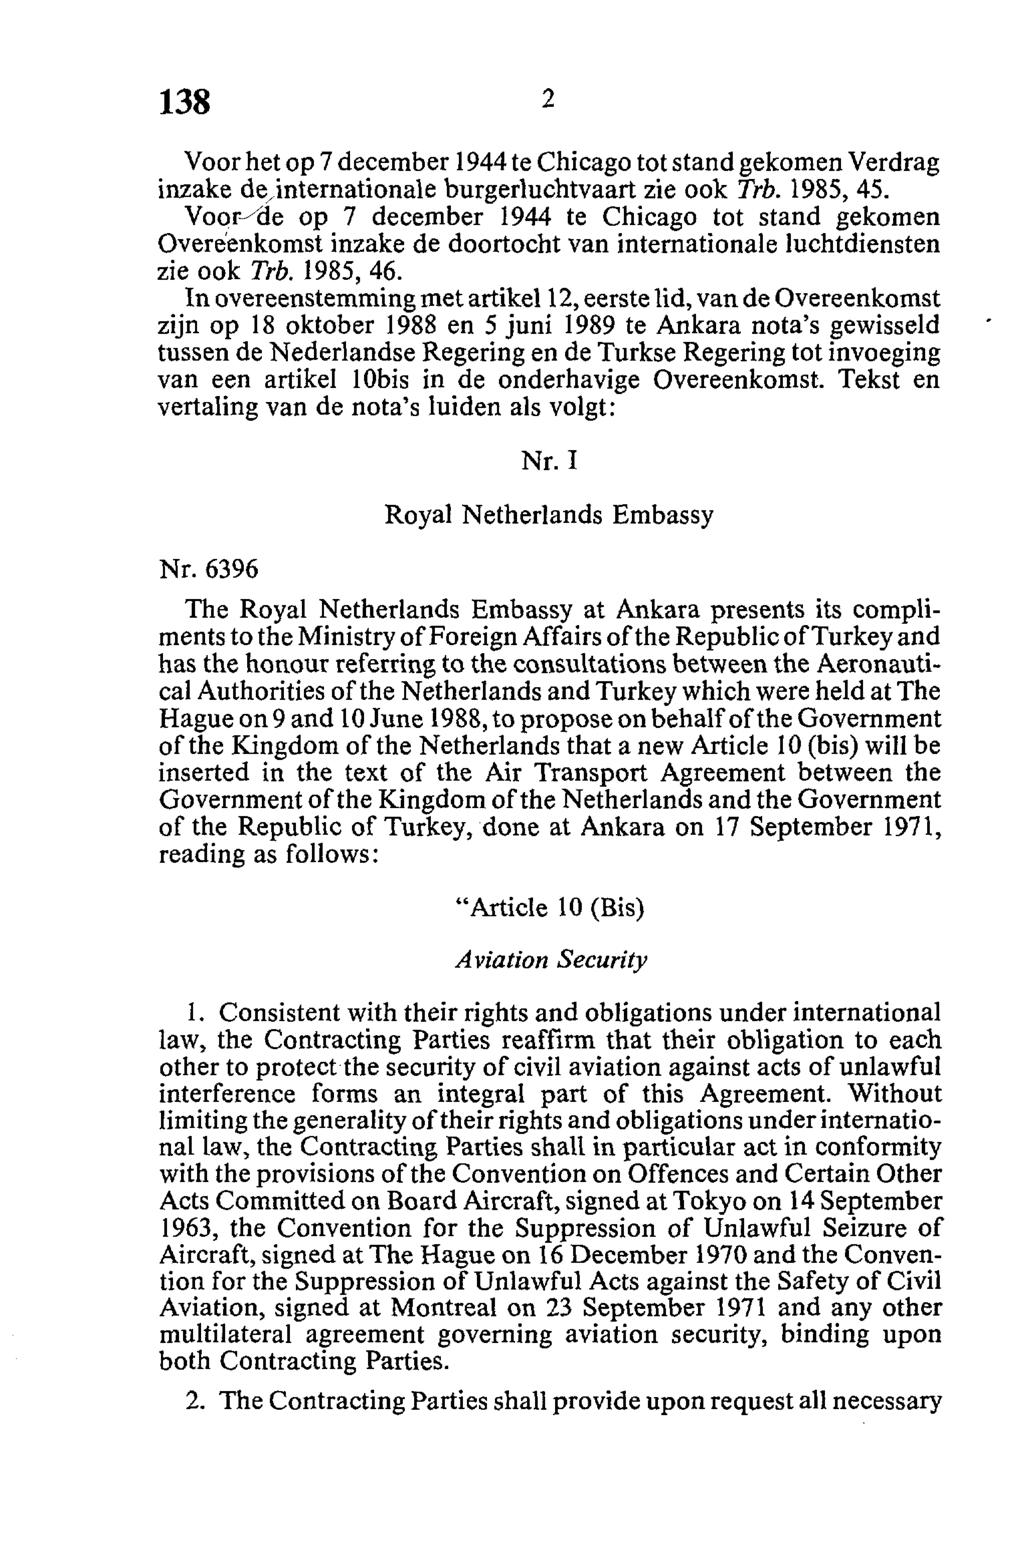 Voor het op 7 december 1944 te Chicago tot stand gekomen Verdrag inzake dejntemationale burgerluchtvaart zie ook Trb. 1985, 45.